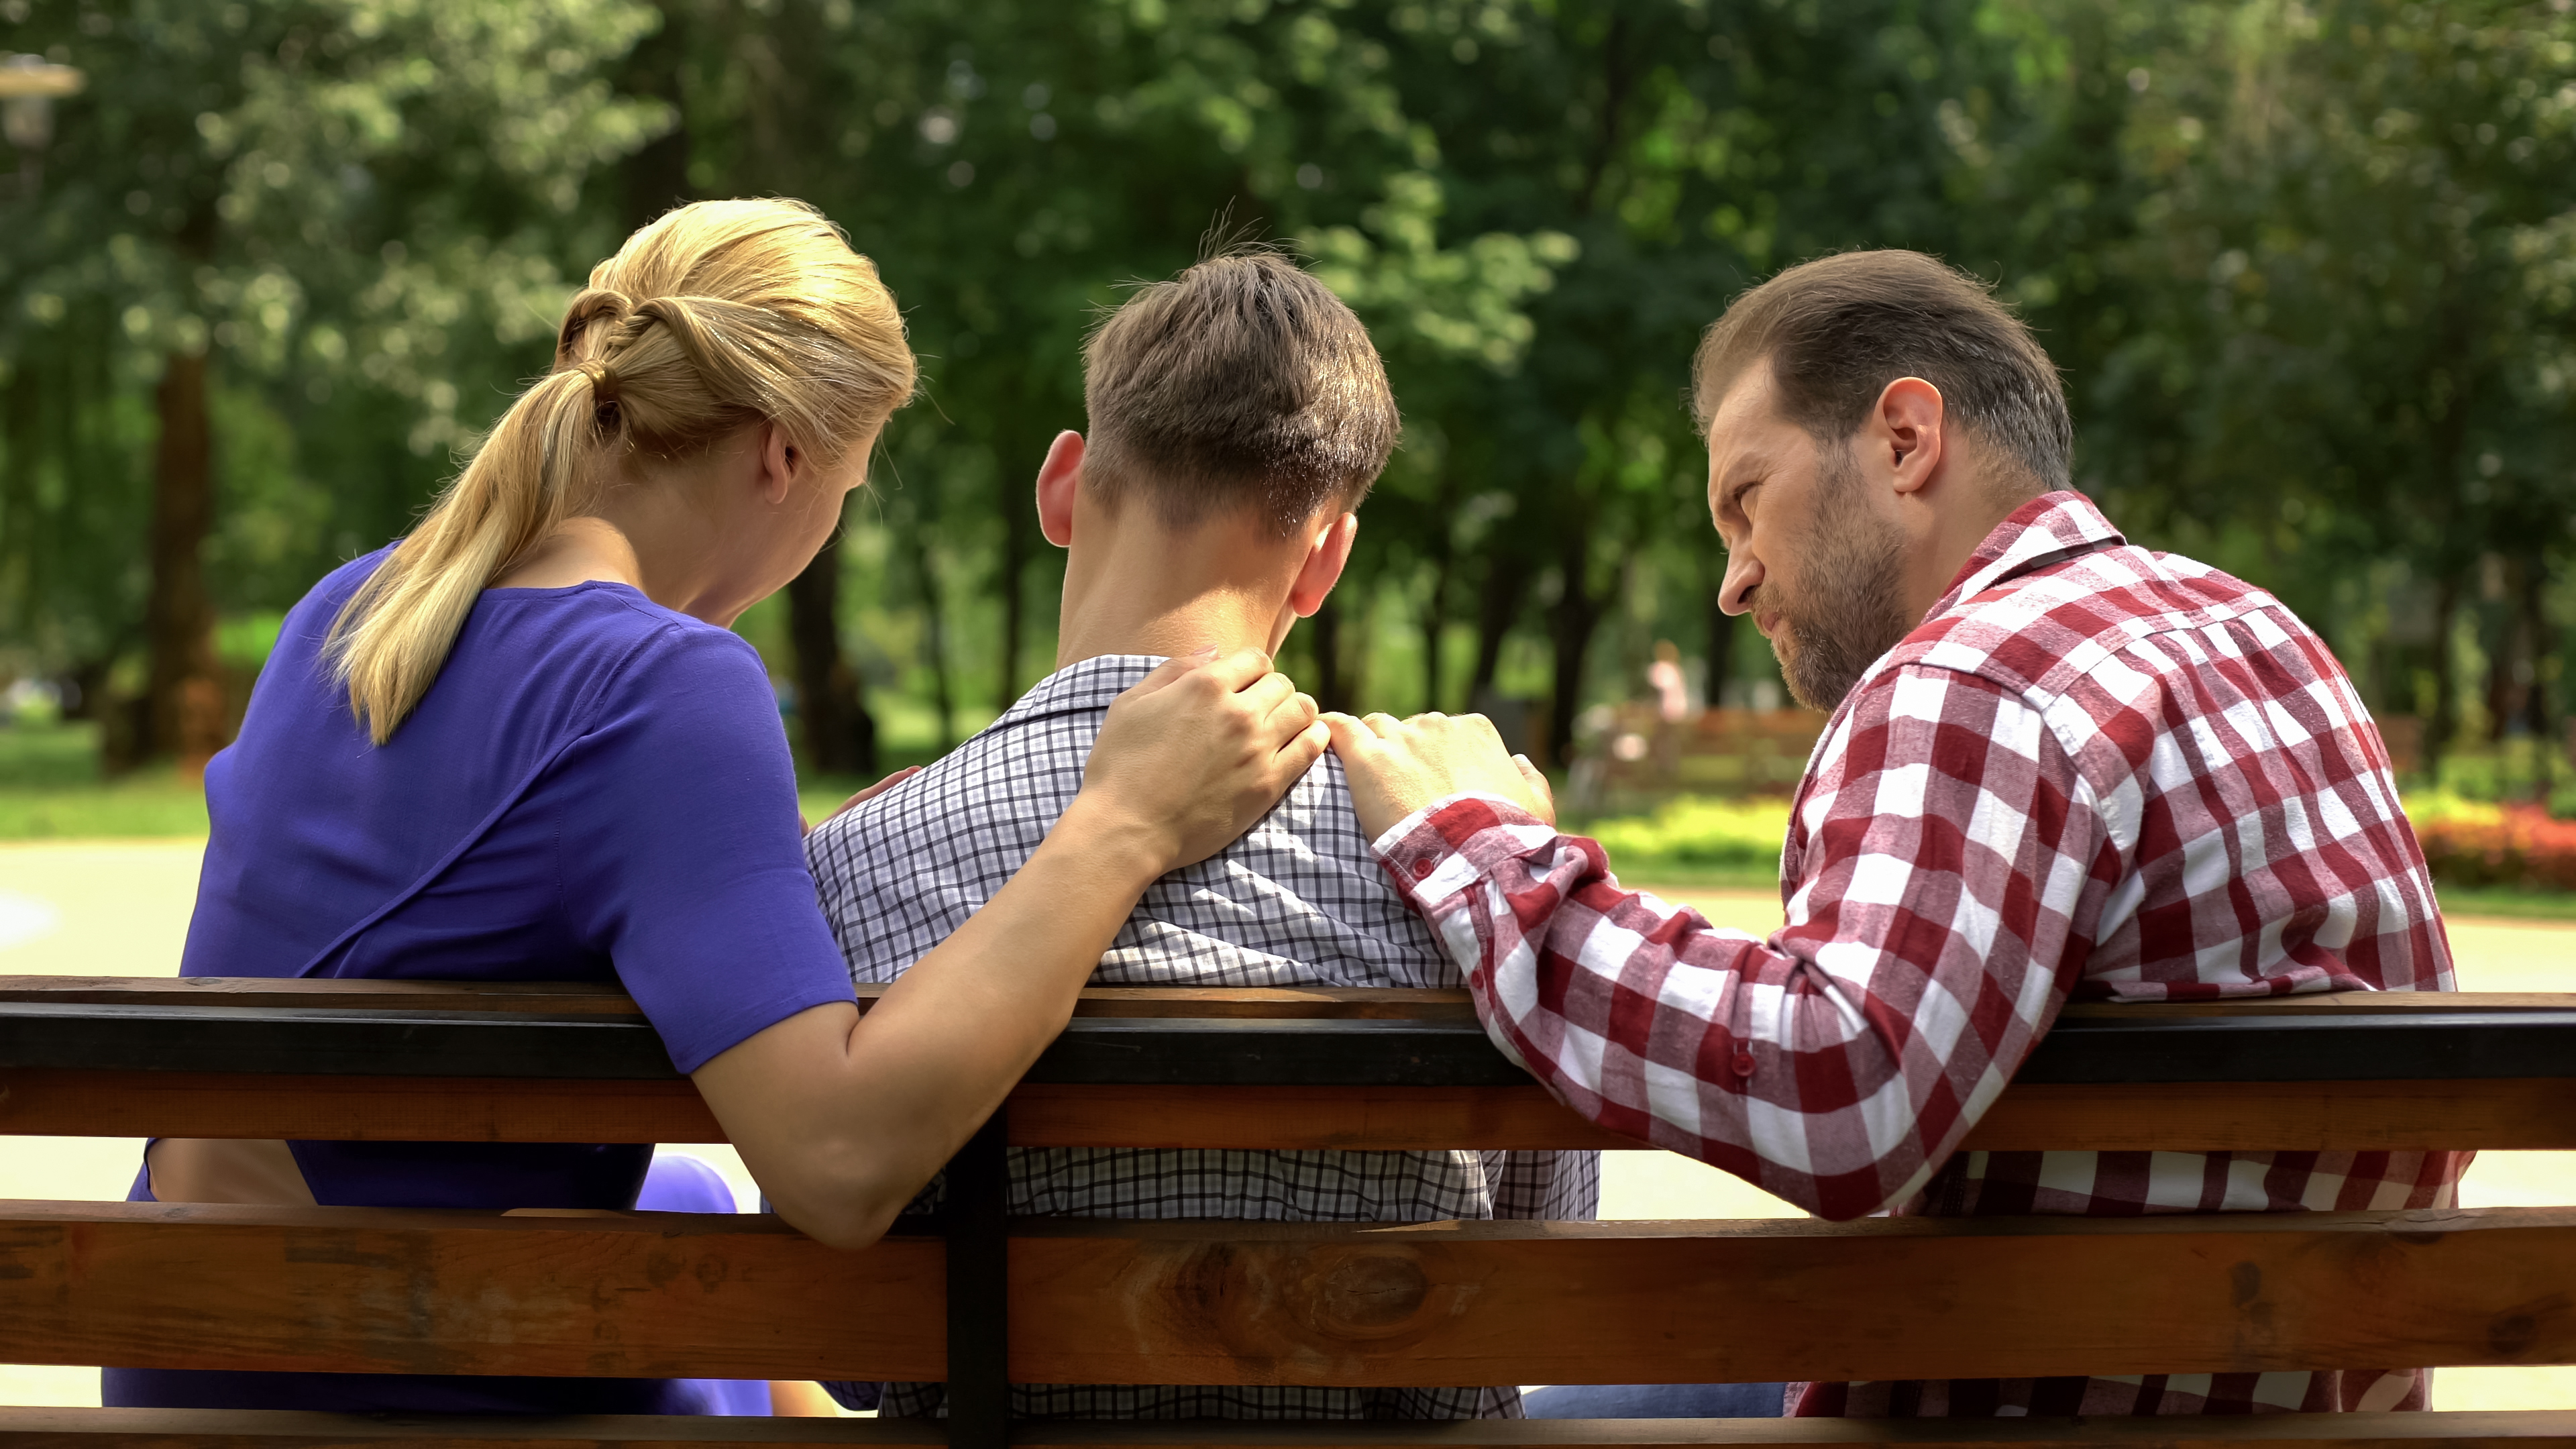 Des parents parlent à leur fils adolescent dans un parc | Source : Shutterstock